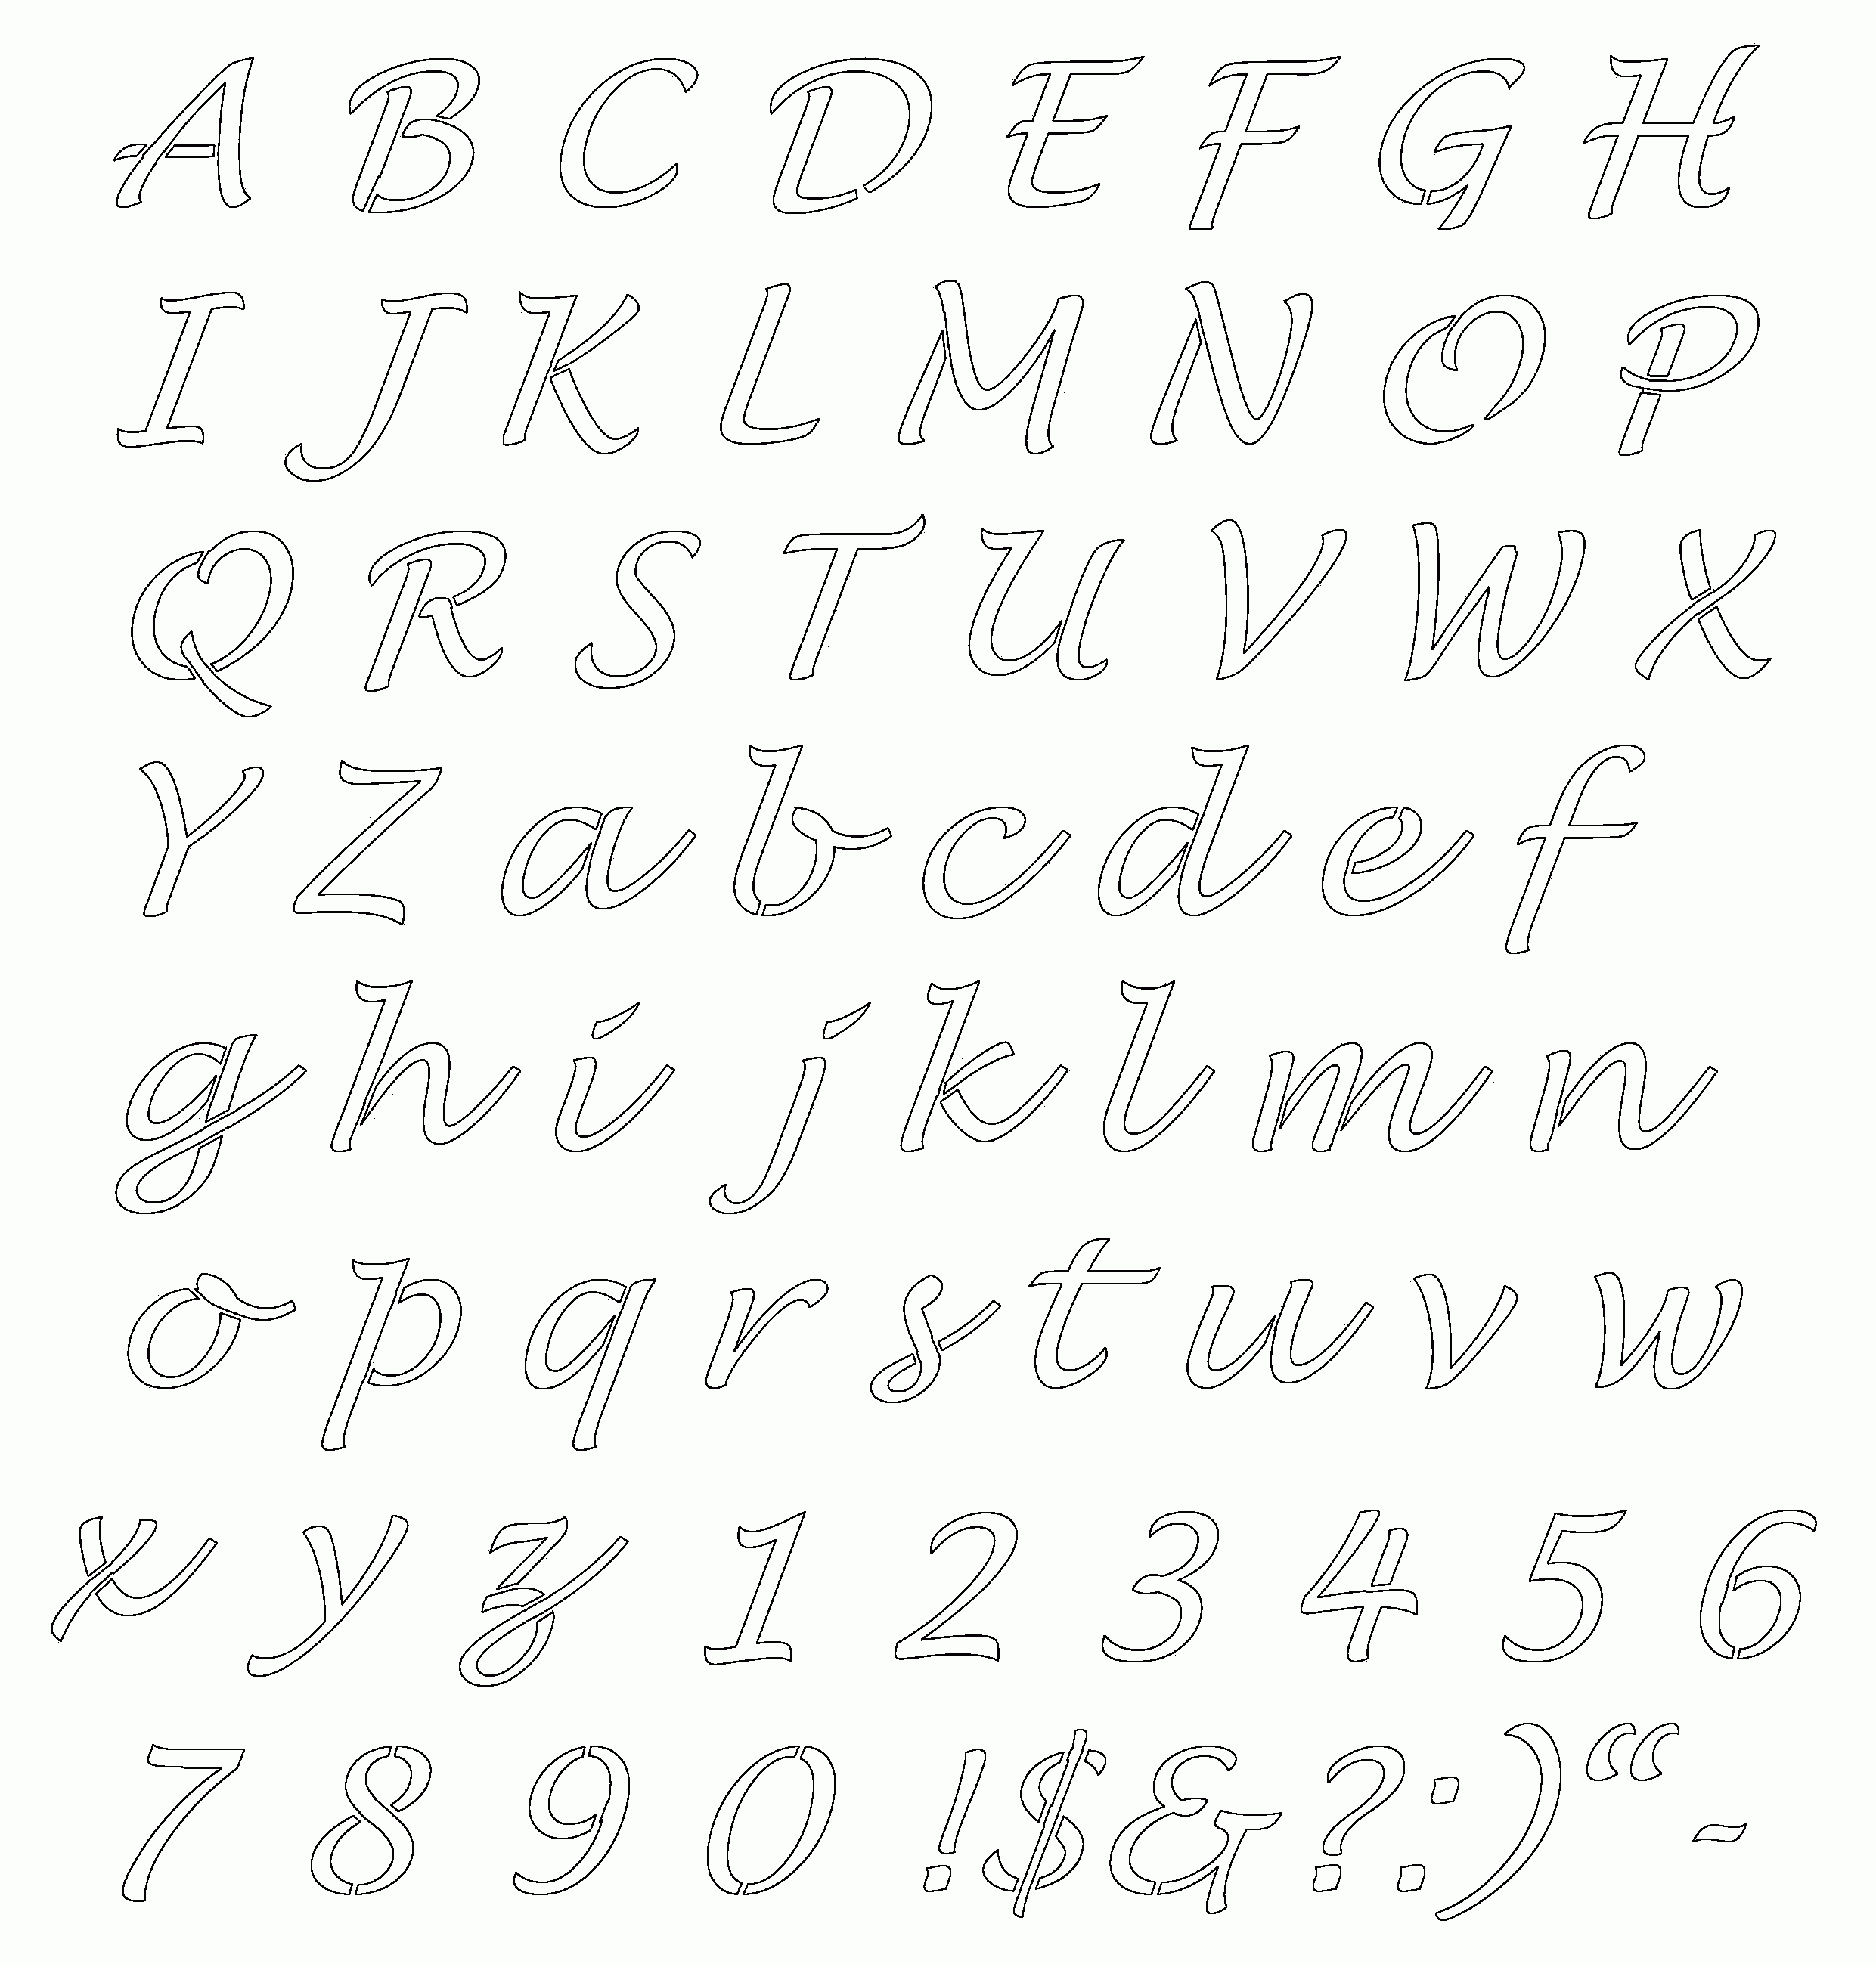 Free Online Alphabet Templates | Stencils Free Printable Alphabetaug - Online Letter Stencils Free Printable